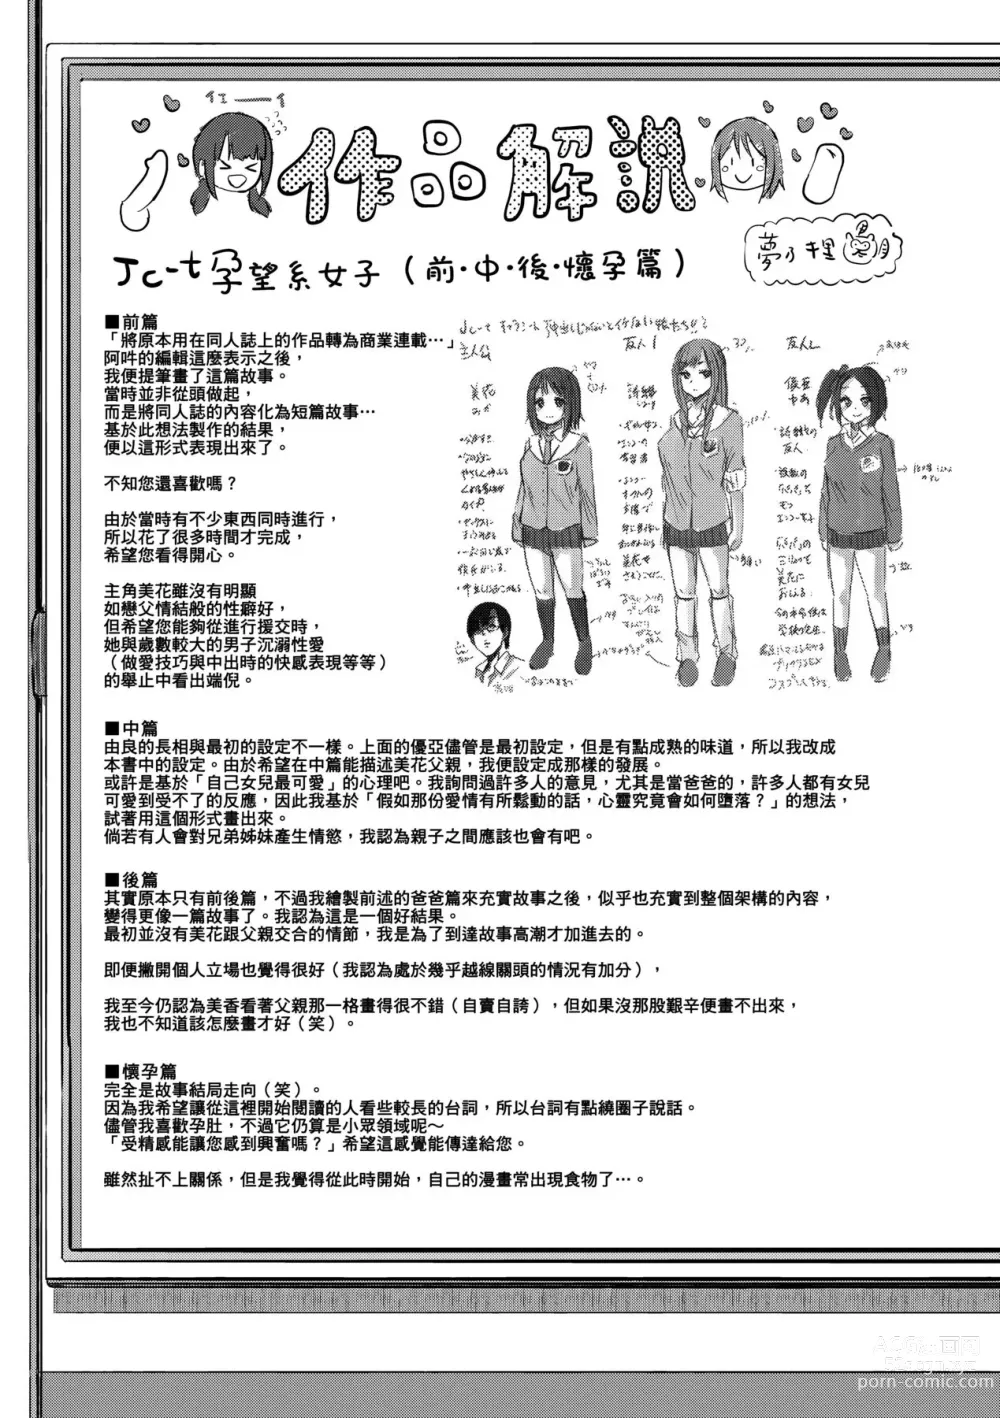 Page 242 of manga jc-t Haramitai-kei Joshi (decensored)